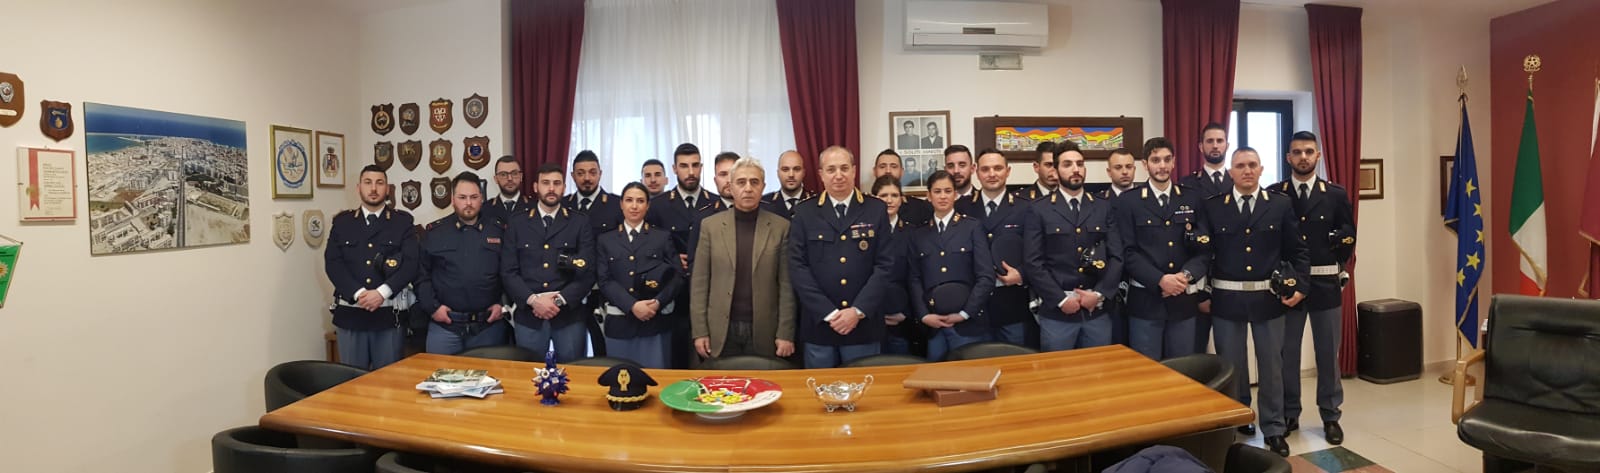 Presentazione dei 28 nuovi poliziotti assegnati alla Questura di Crotone